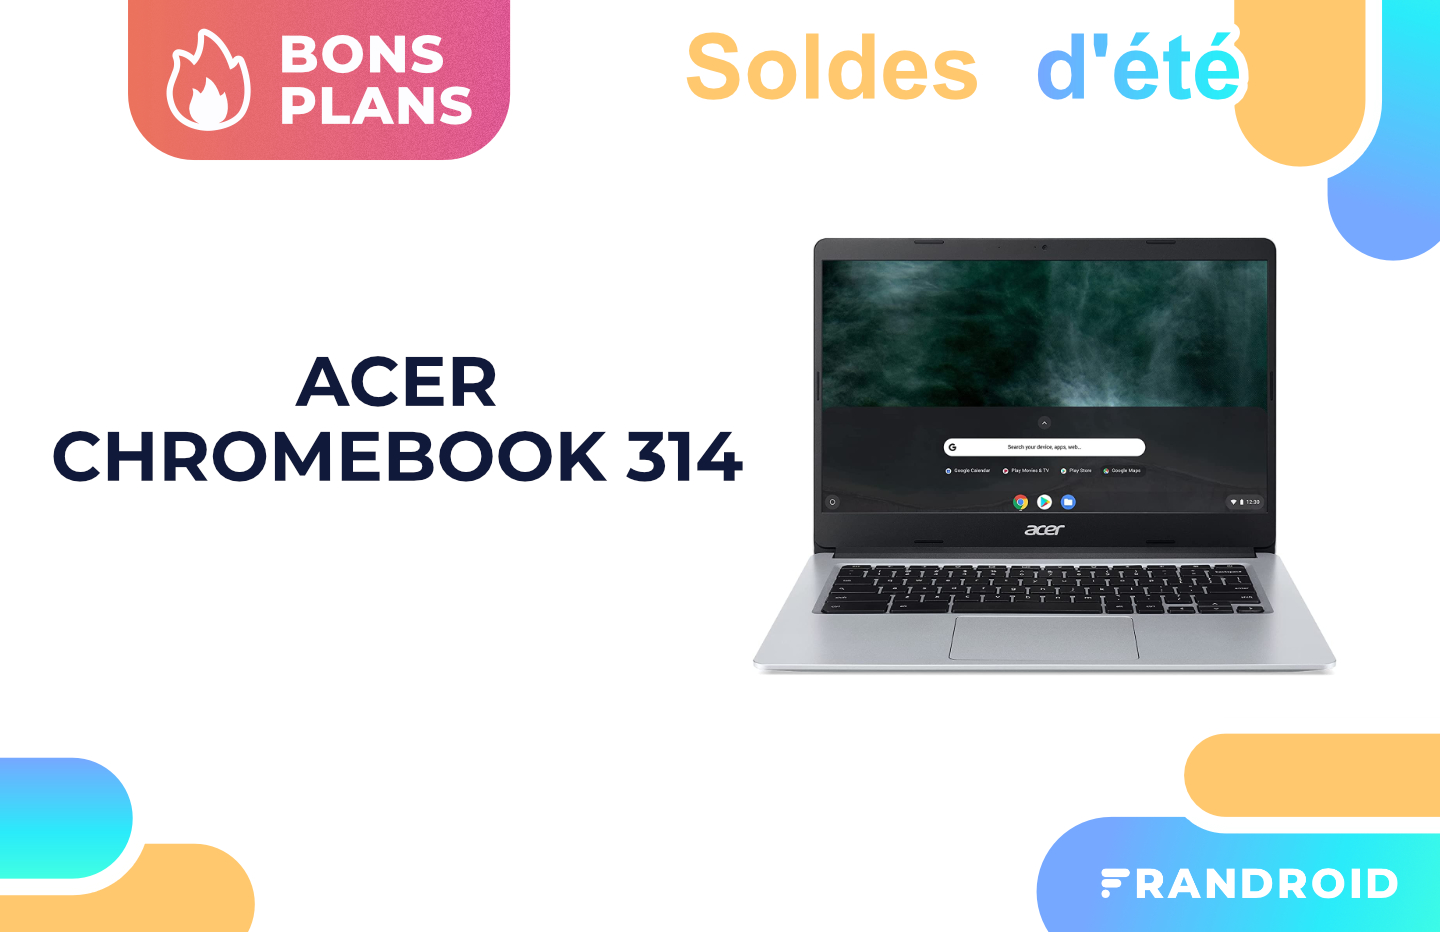 Pour 349 euros, ce laptop Acer sous Chromebook est un excellent deal